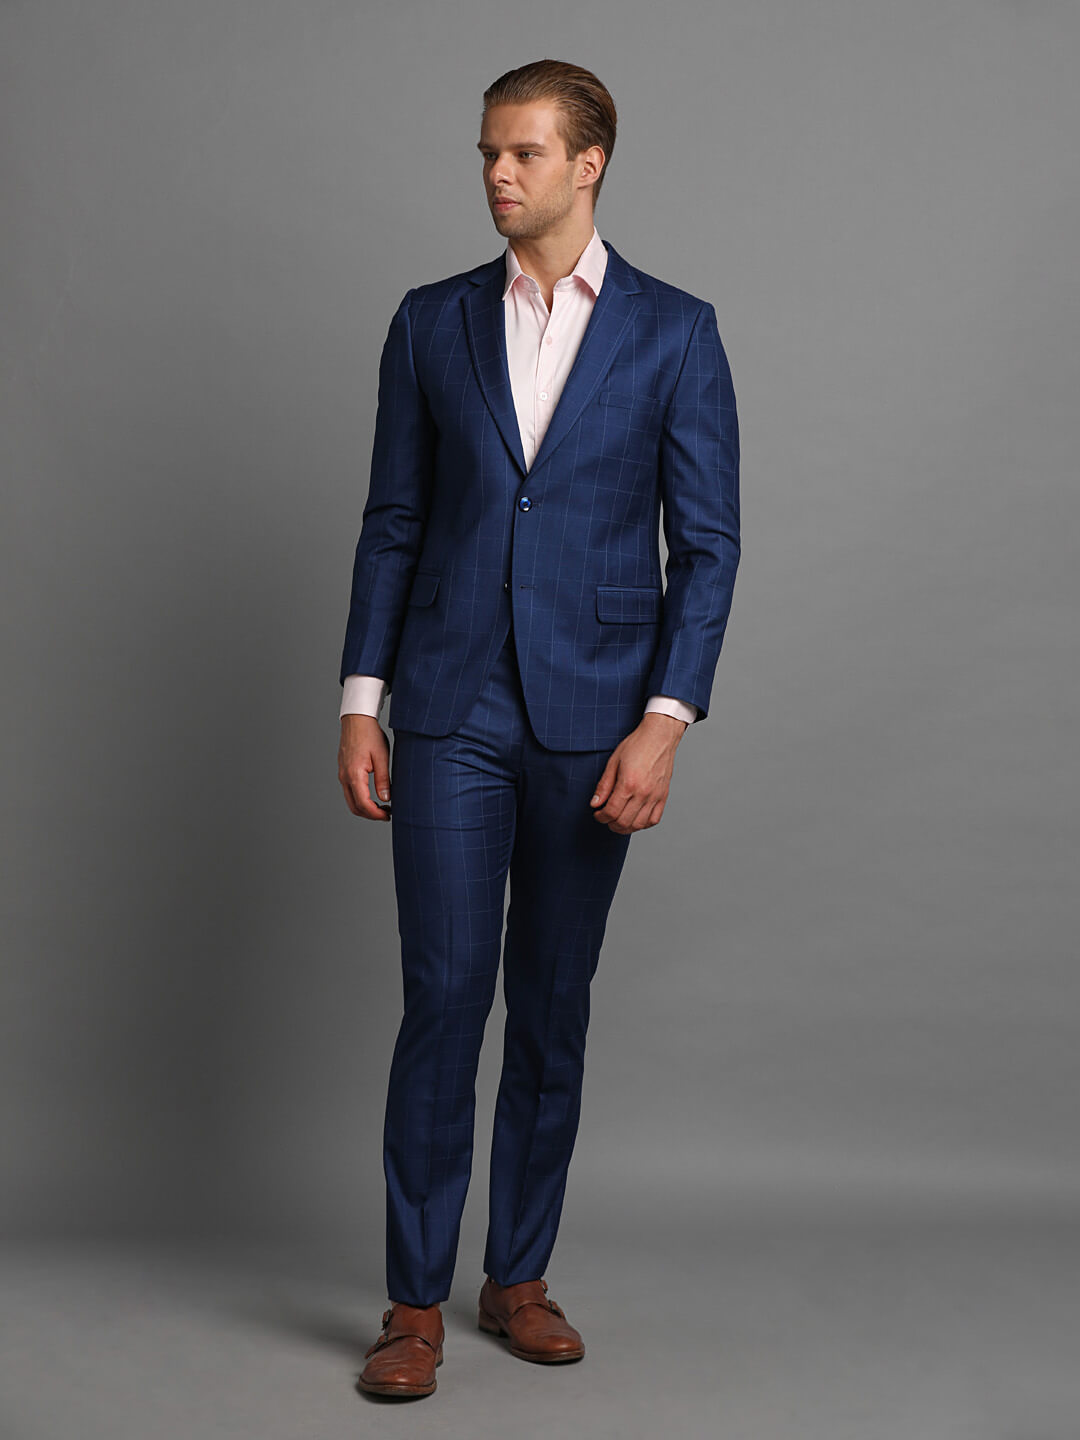 Royal Blue Checks 2 Piece Suit